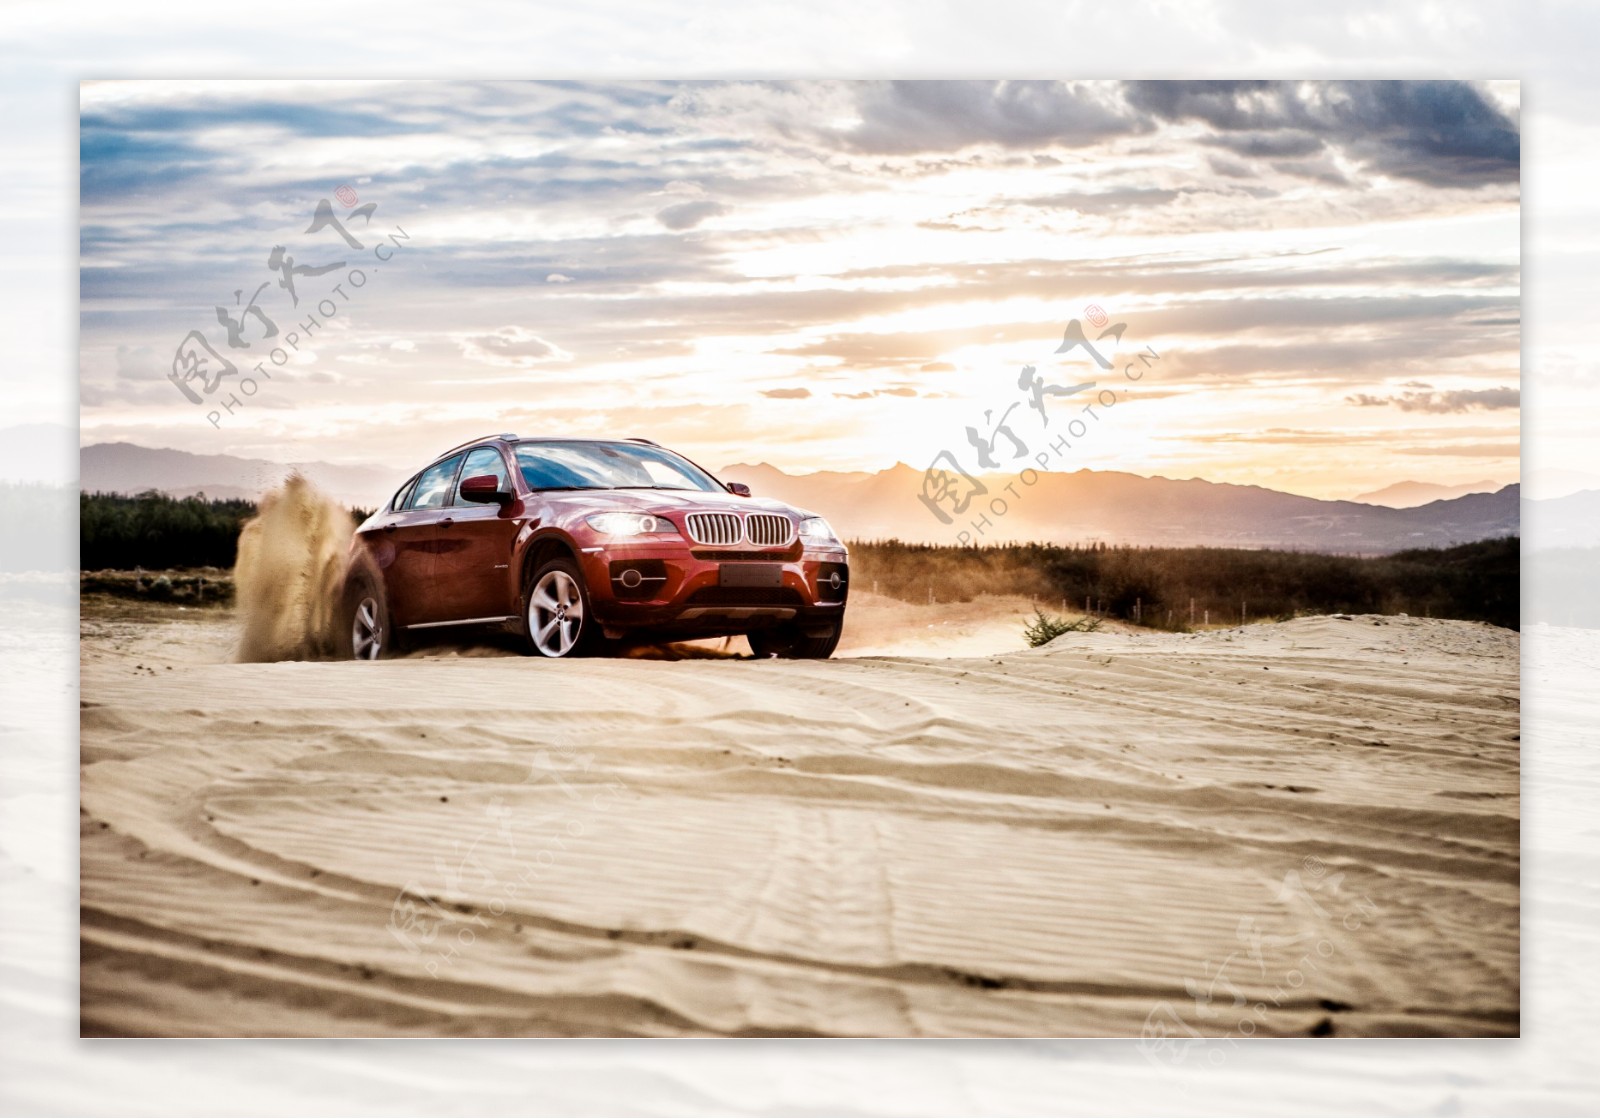 BMWX6沙漠之旅图片